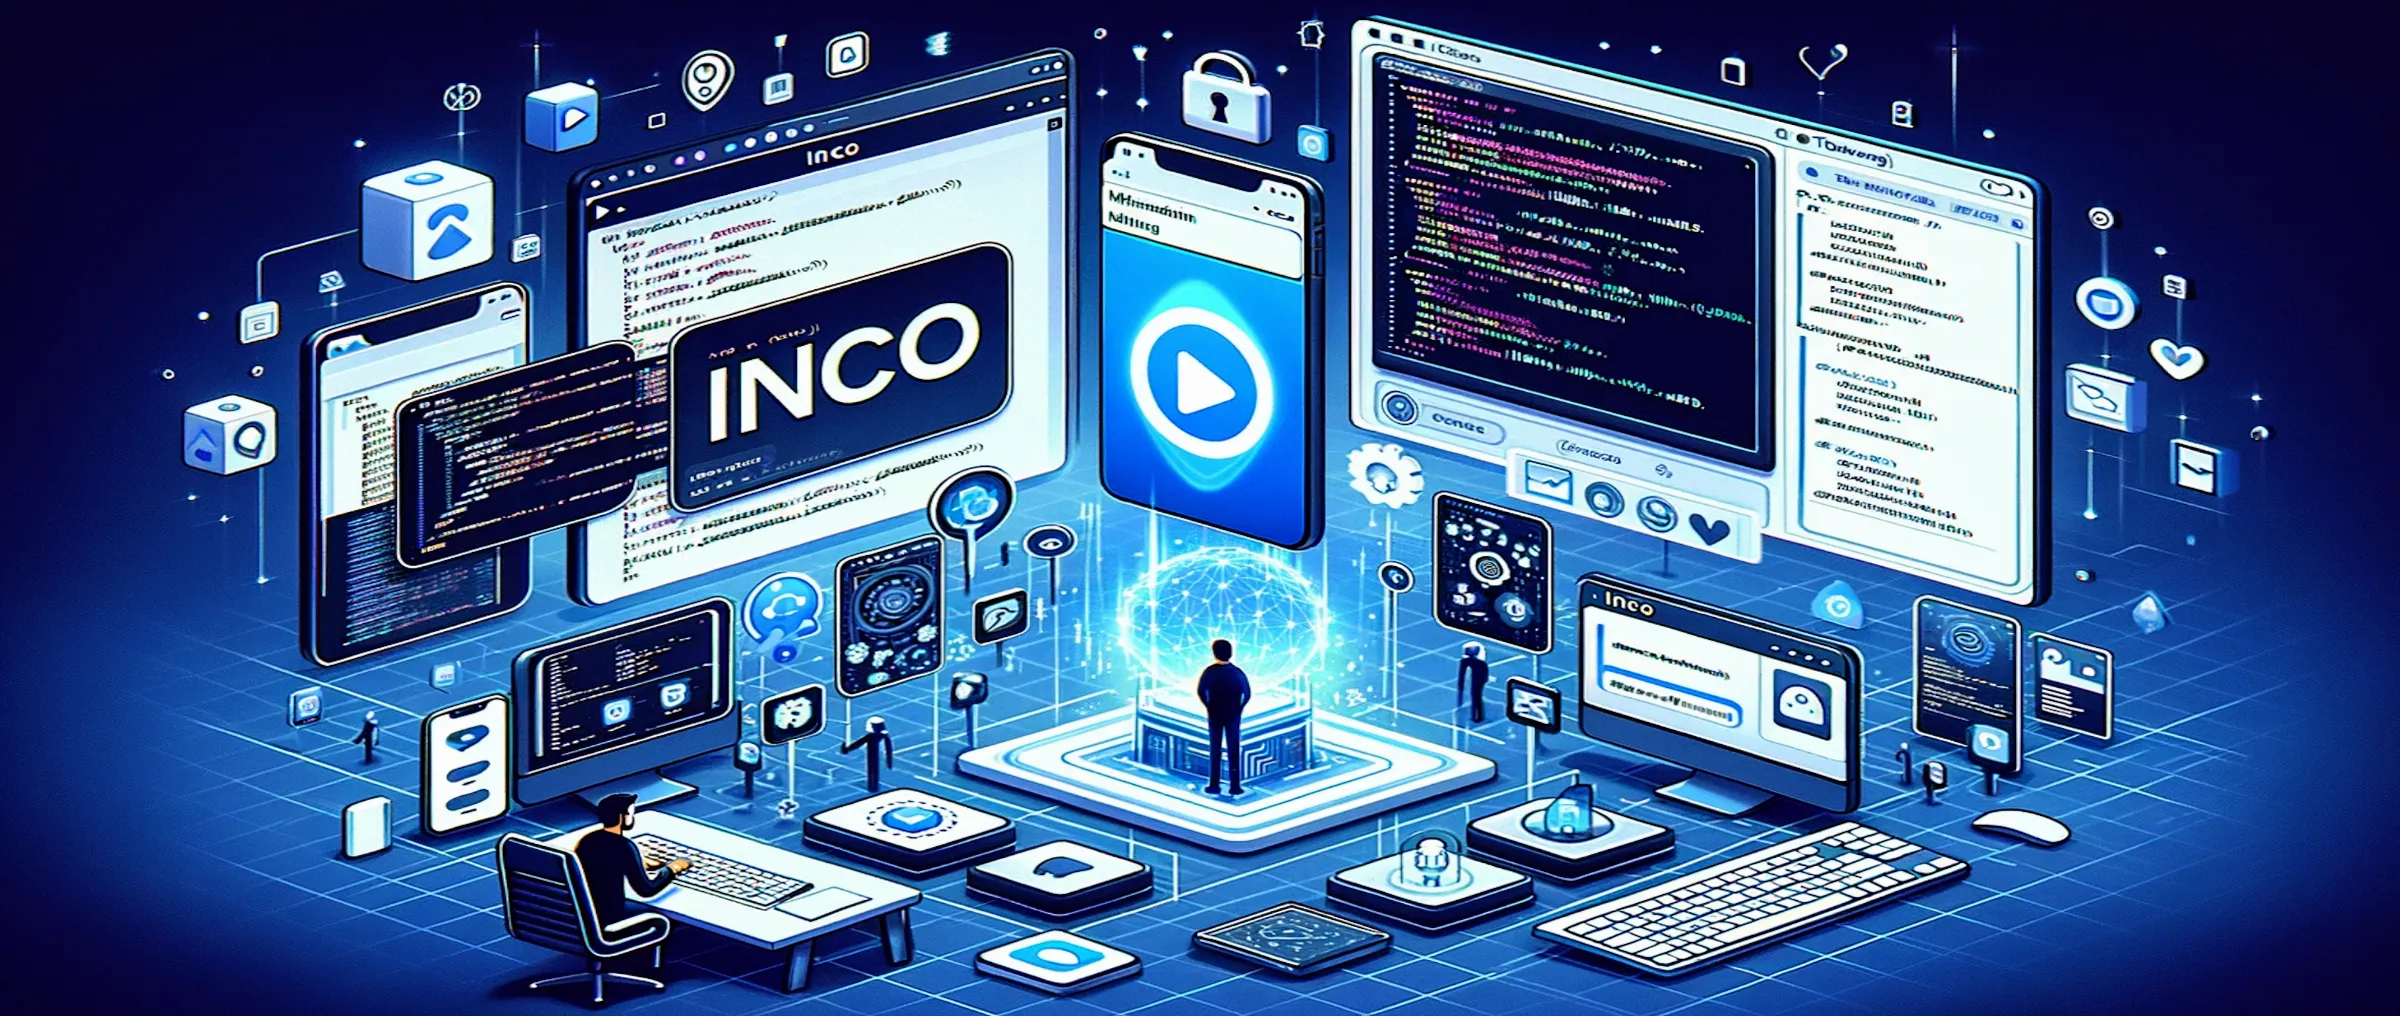 Проект Inco позволяет развивать мини-приложения в Telegram